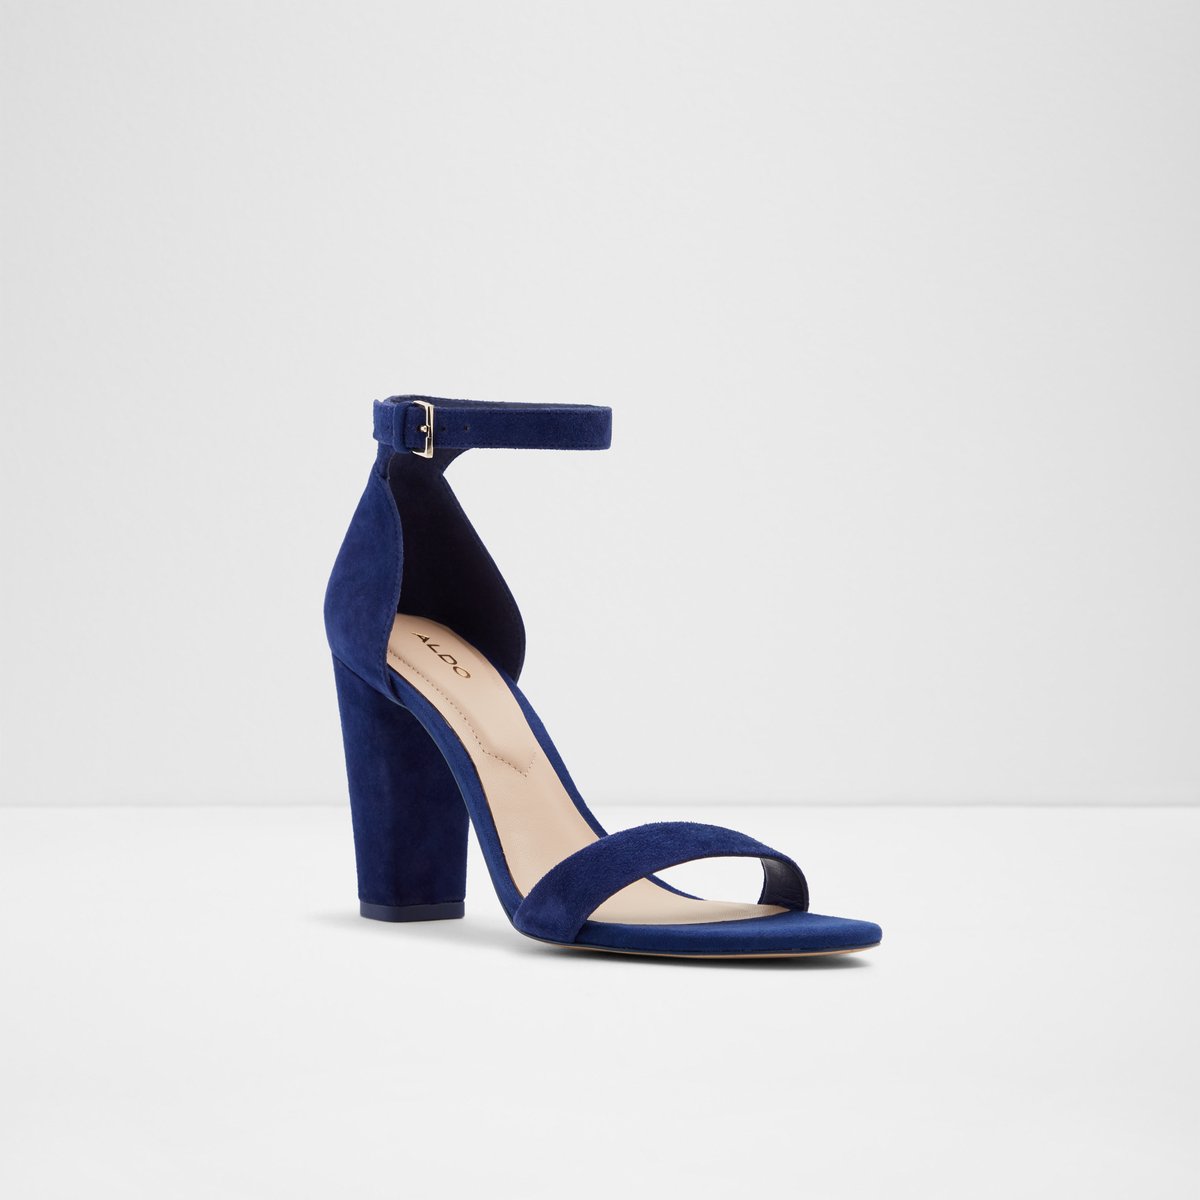 Jerayclya Medium Blue Women's Block heels | Aldoshoes.com US